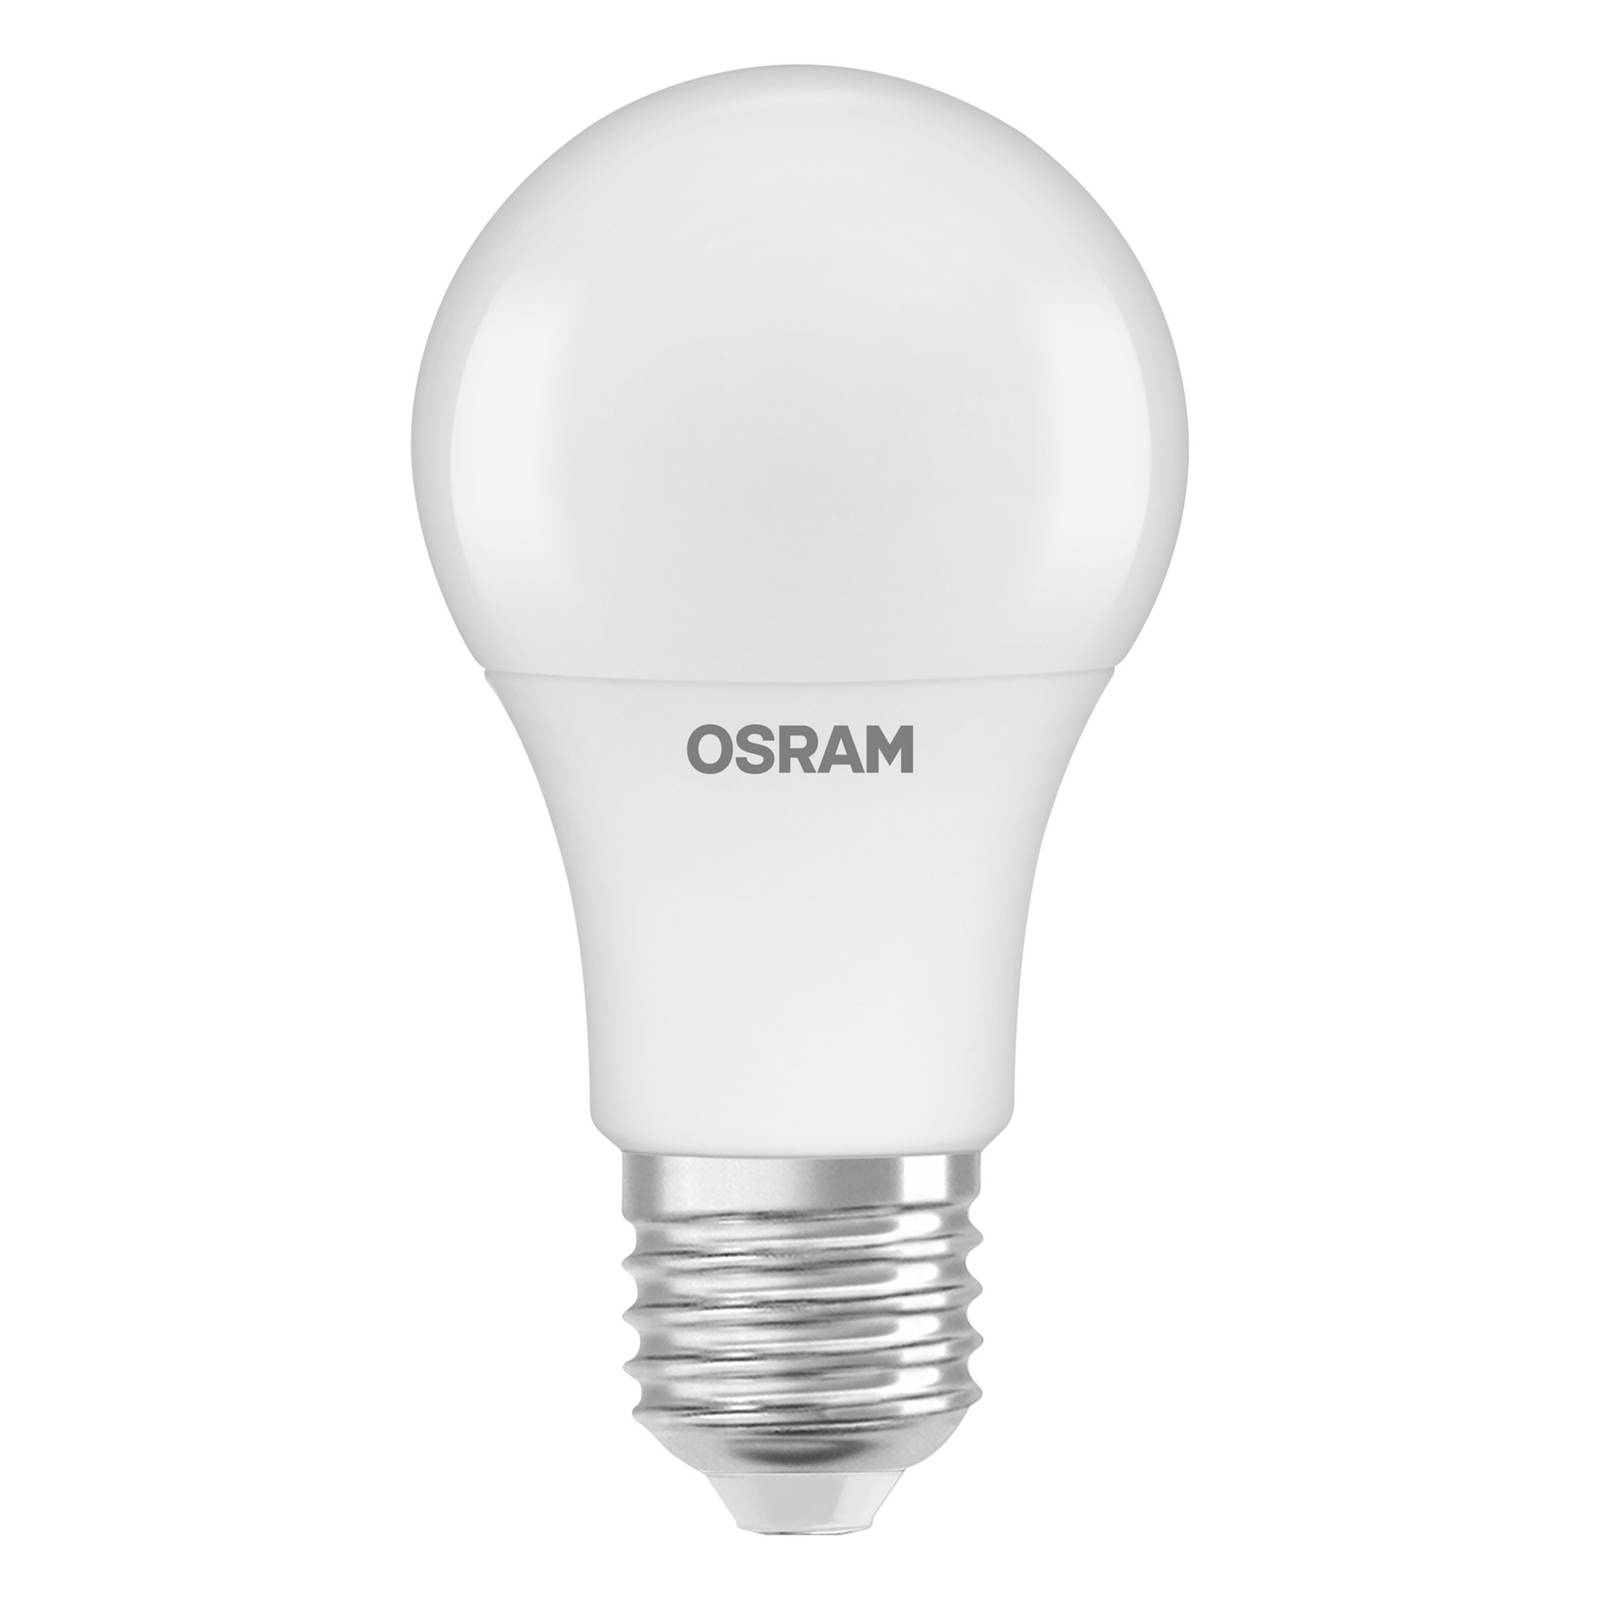 OSRAM OSRAM LED E27 5,8W opál senzor denního světla